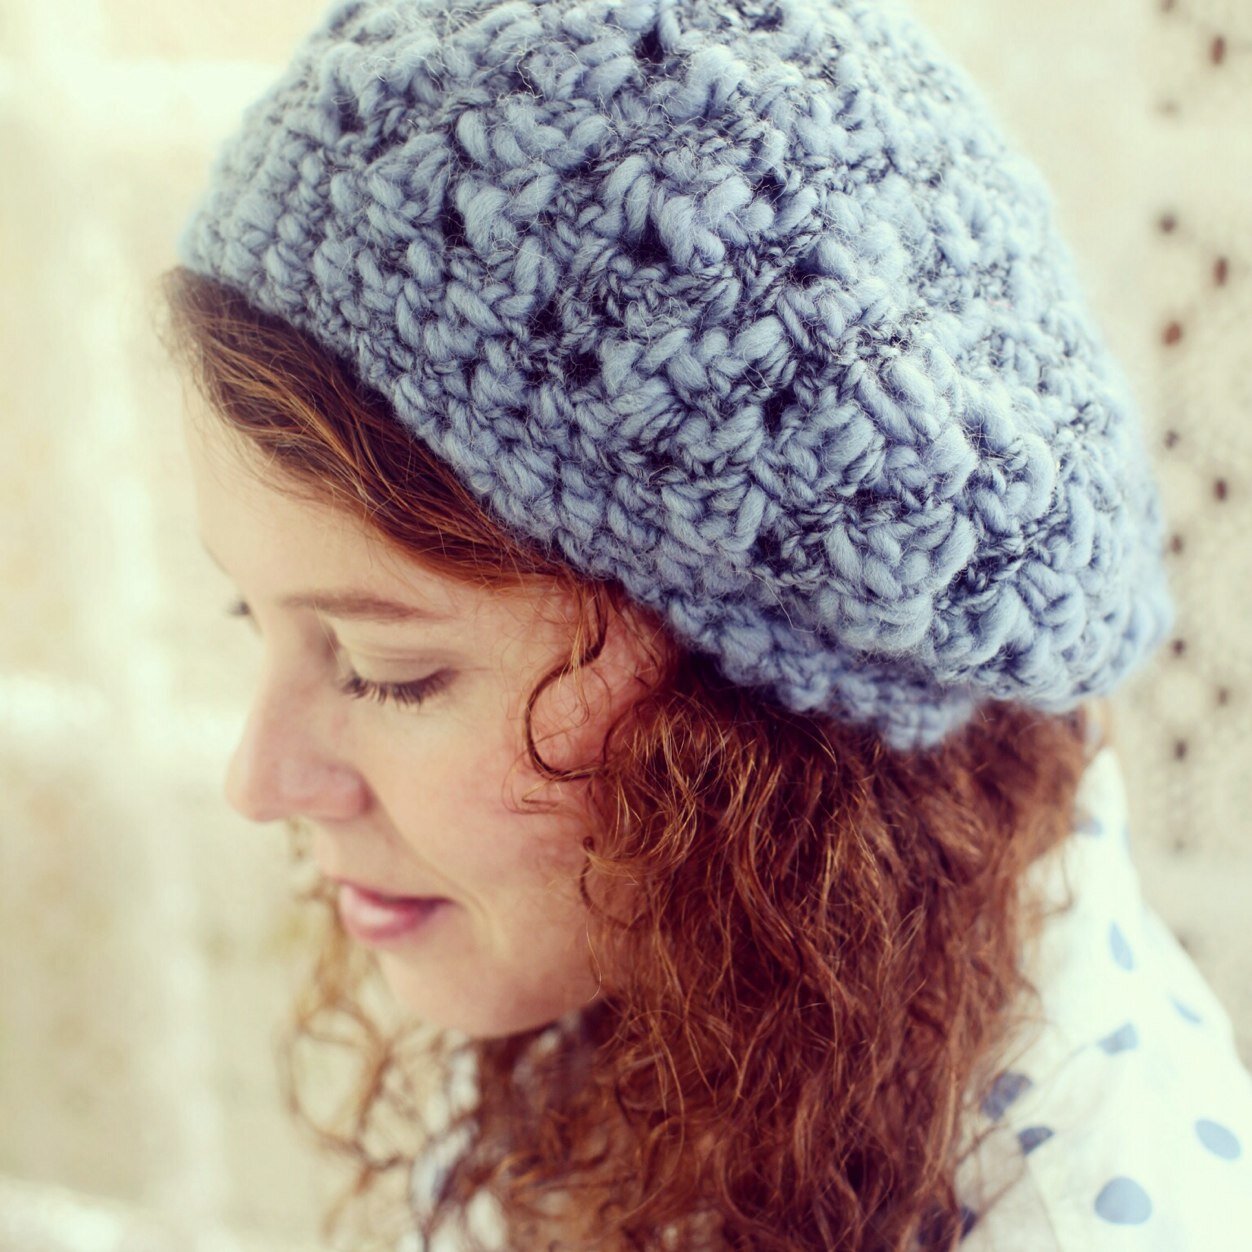 Crochet blogger & designer… Author of ‘Romantic Crochet’ 💕